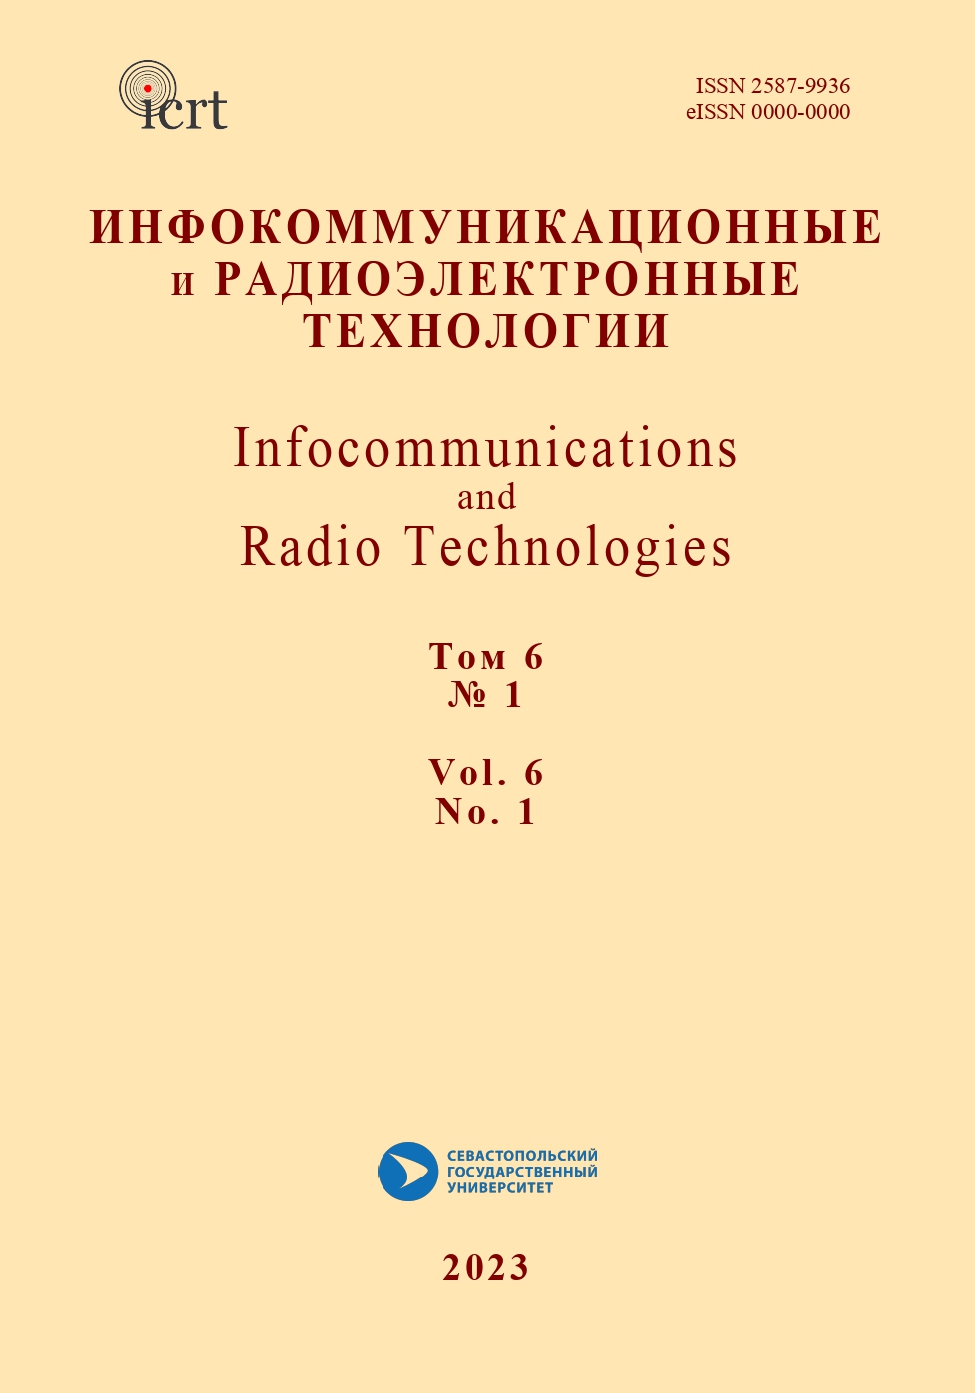             Проект IEEE oral history: академик Ю. В. Гуляев. Часть 3
    